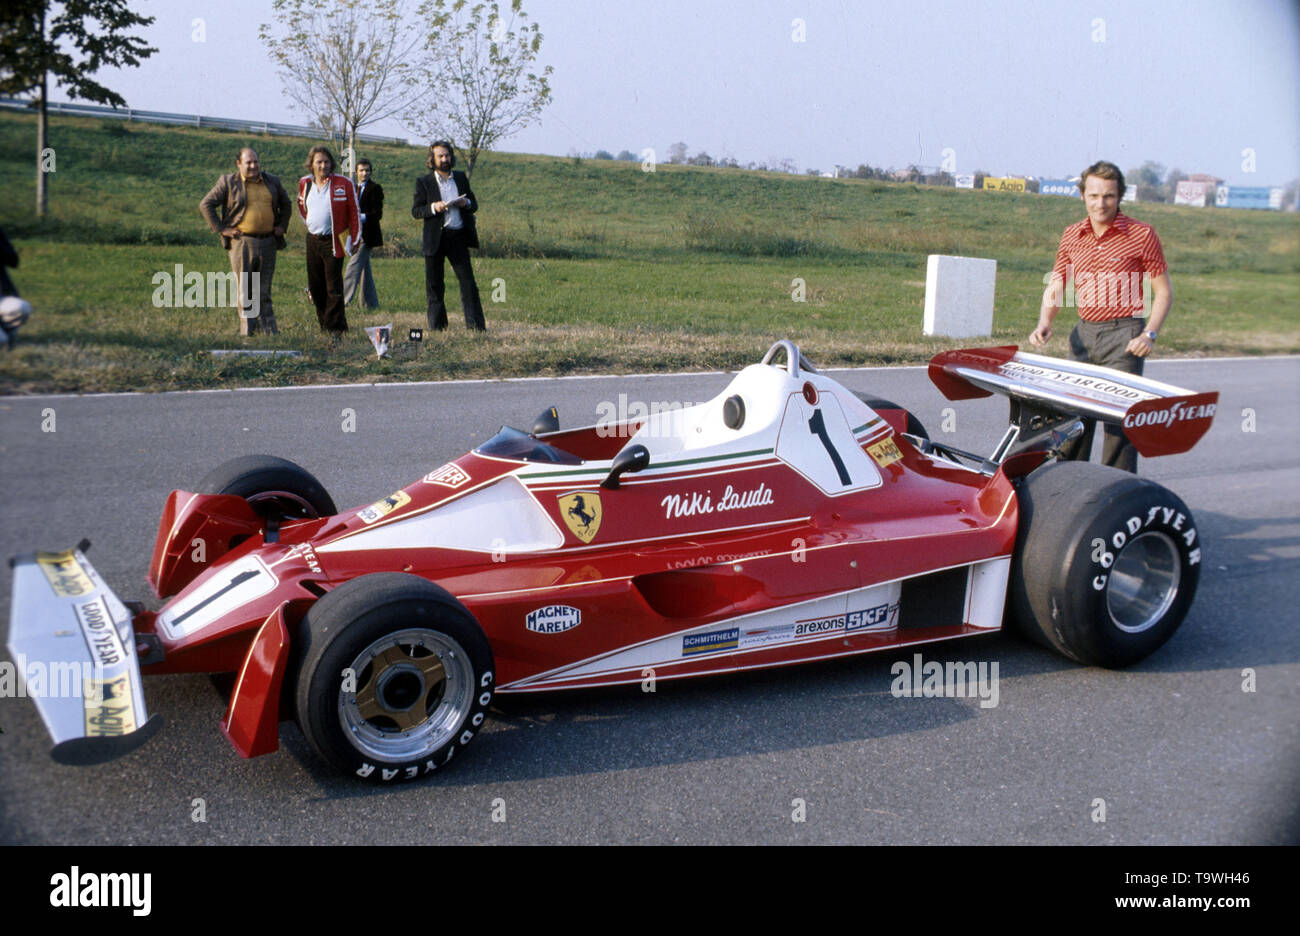 La Ferrari 312T2 Niki Lauda www.hoch-zwei.net, copyright: HOCH ZWEI/Ronco |  Utilizzo di tutto il mondo Foto stock - Alamy